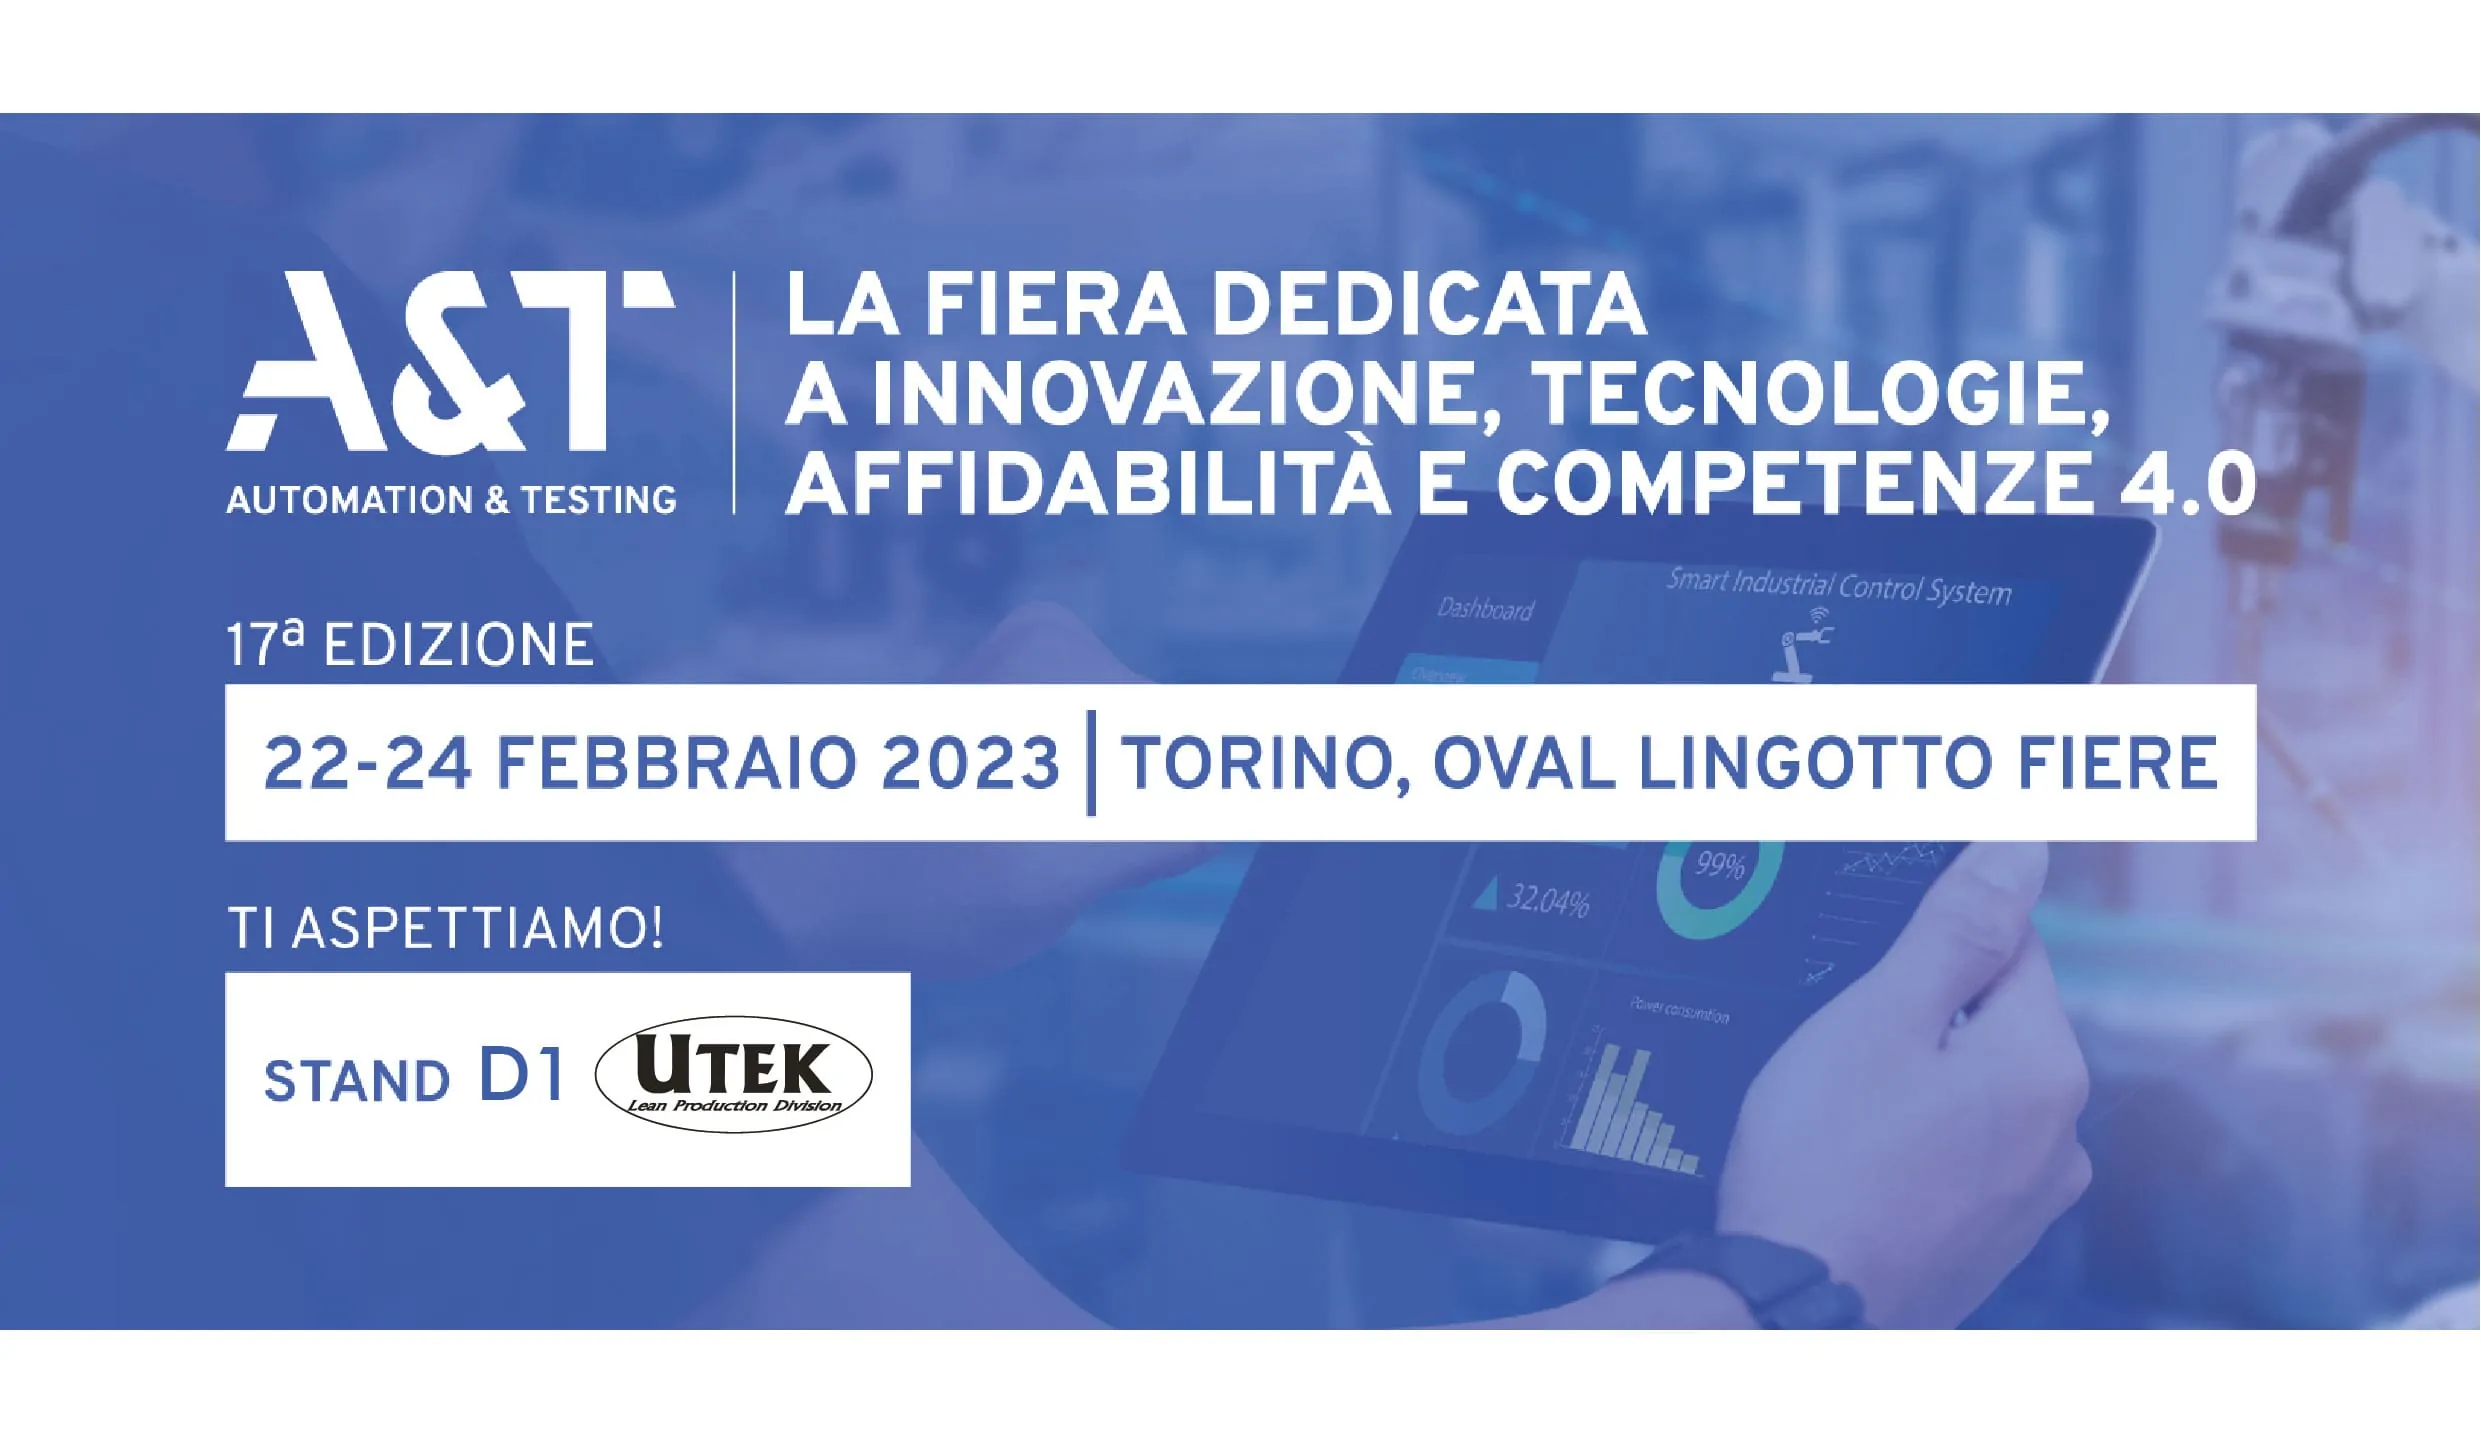 A&T 2023 - Fiere Torino - Oval Lingotto